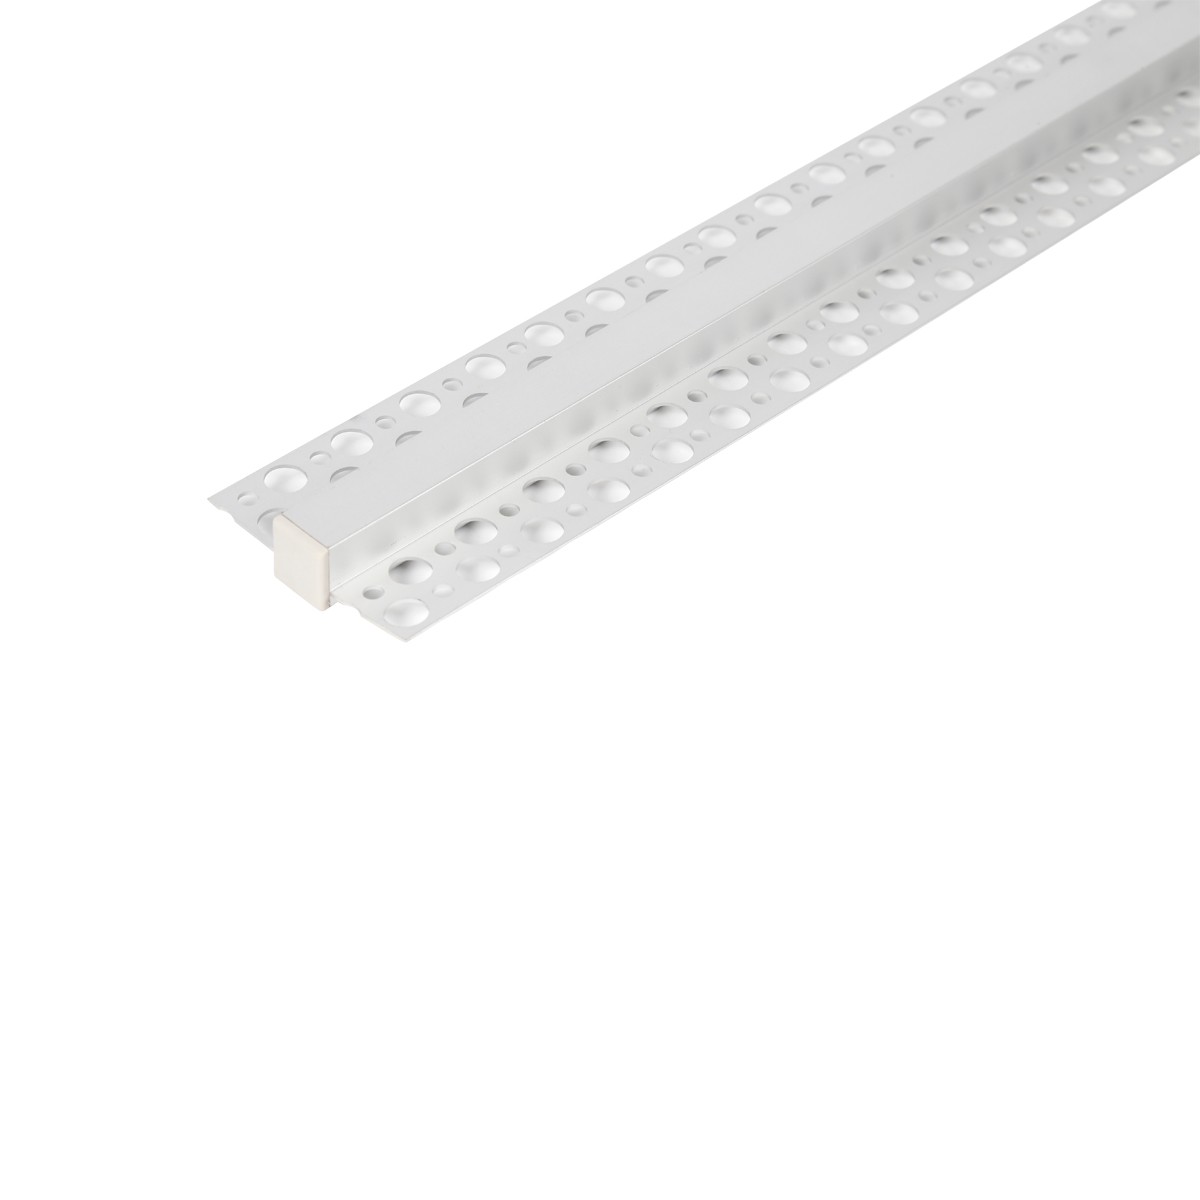 Aisle embedded linear light living room linear light cabinet aluminum slot light no dark area LED ha